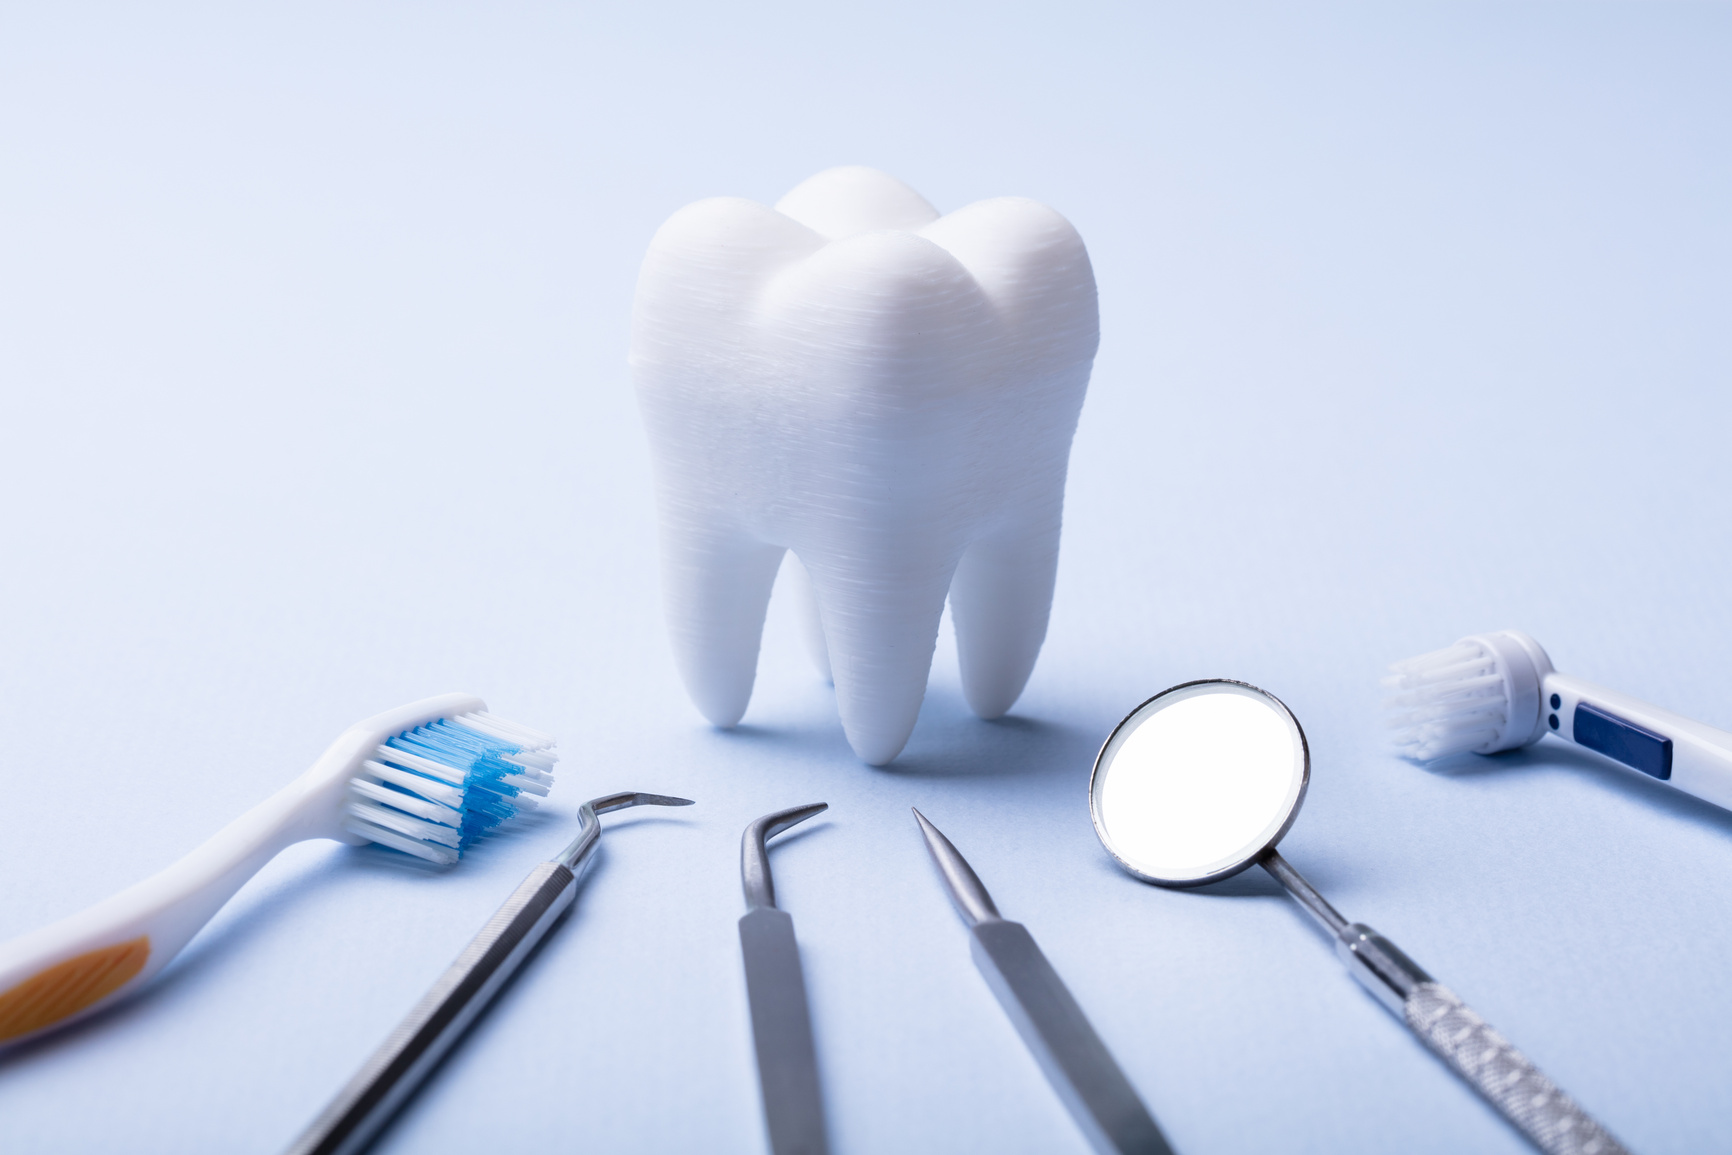 Dental Model And Dental Equipment